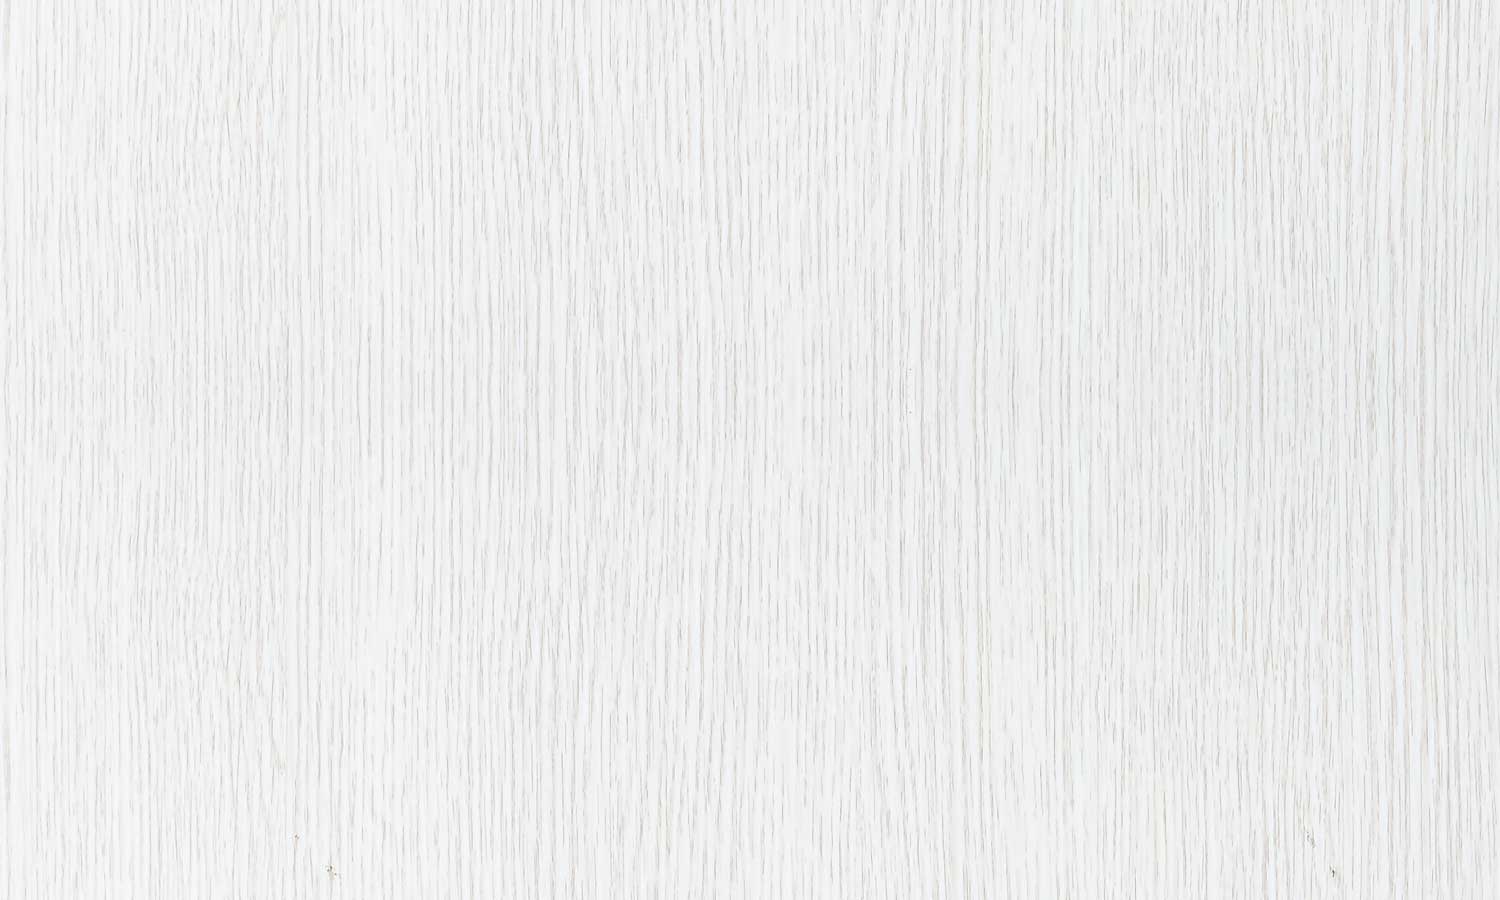 Samoljepljiva folija za namještaj - Bijelo drvo PAT003